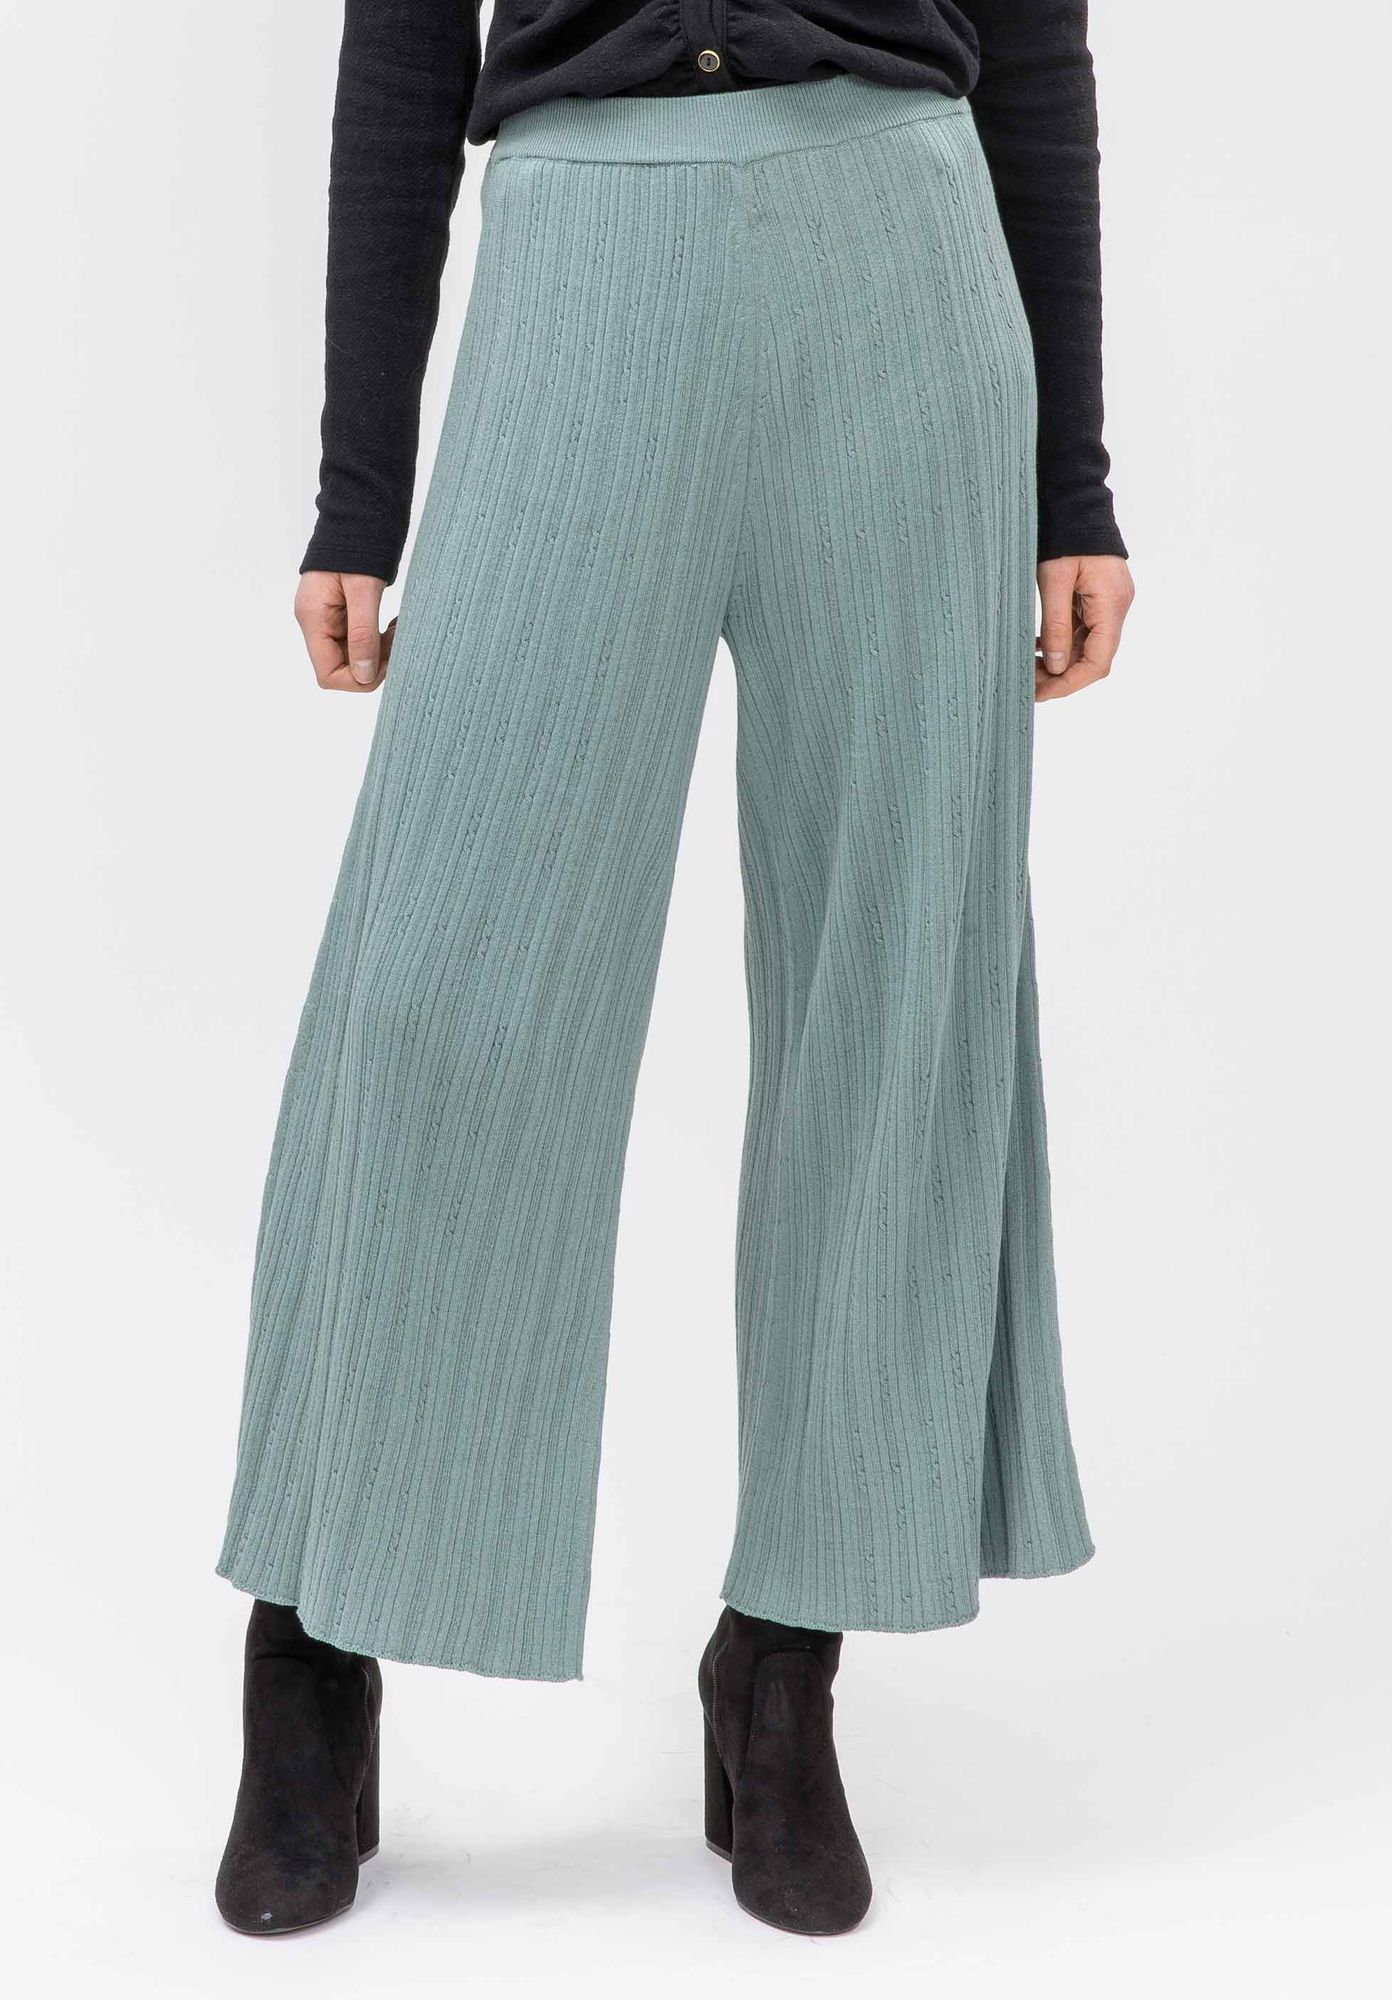 Pantalon LATHI forme culotte vert antique de LOVJOI en coton biologique